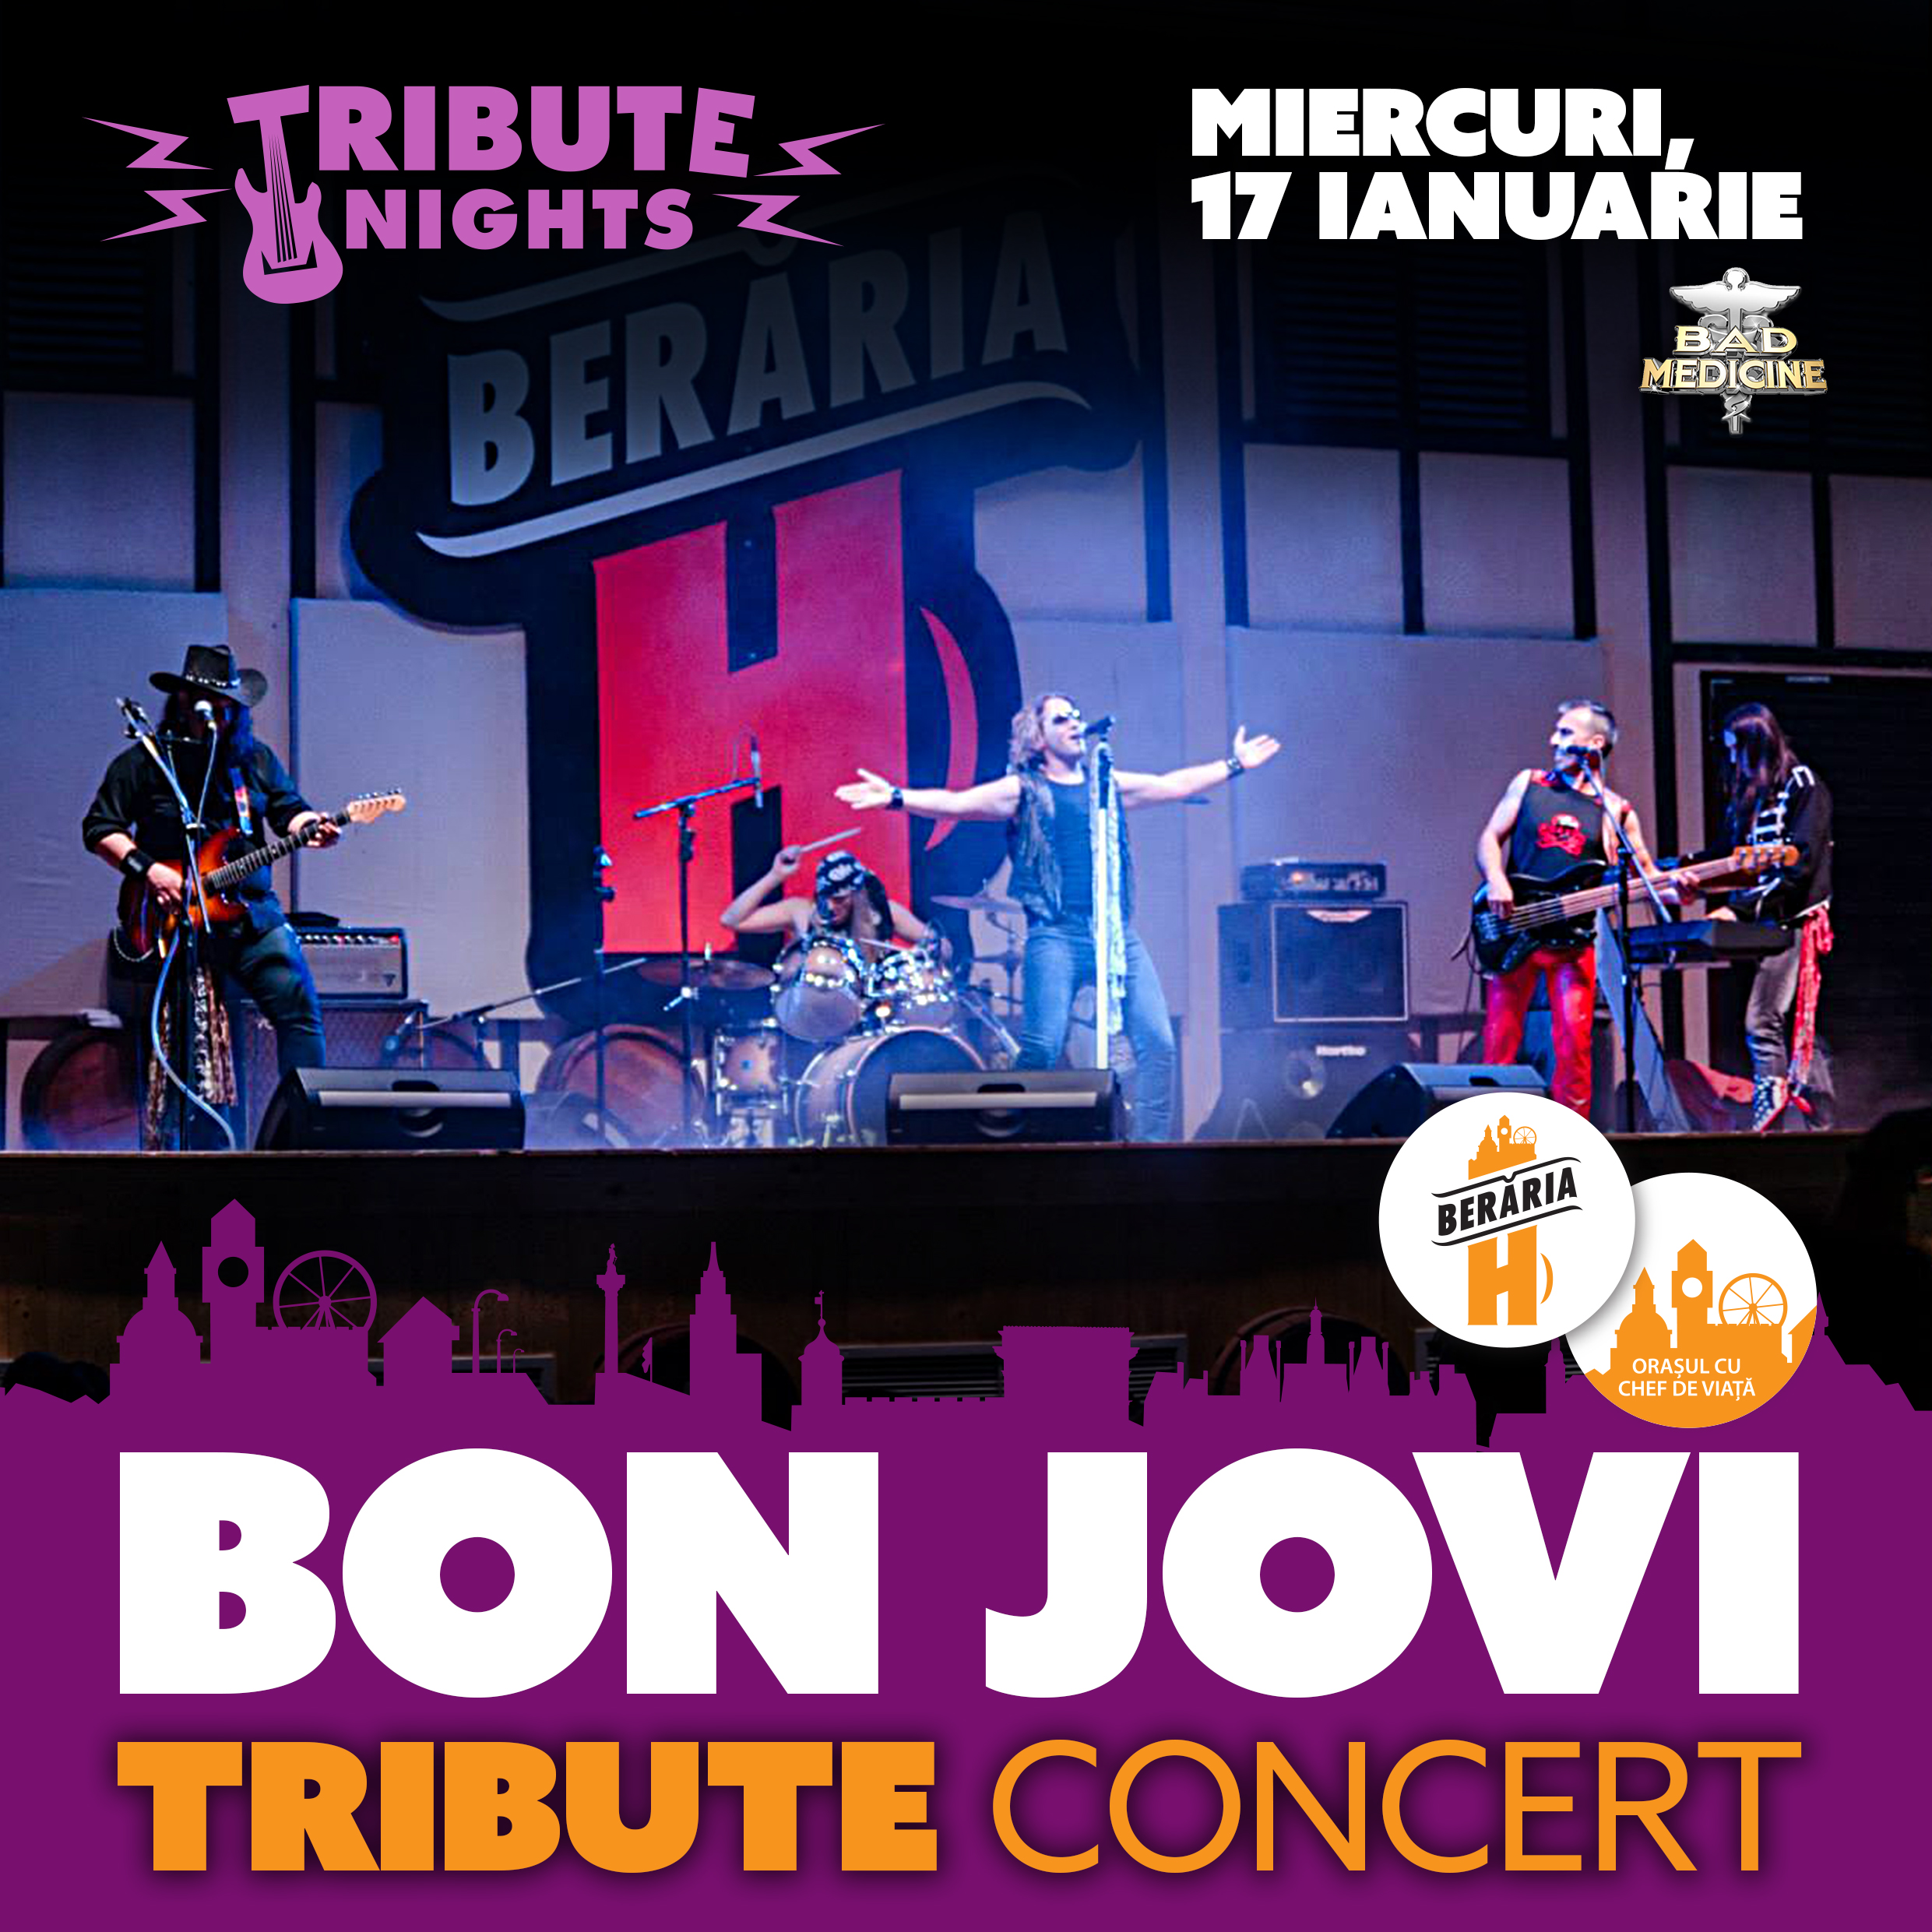 Bon Jovi Tribute Concert Tribute Nights